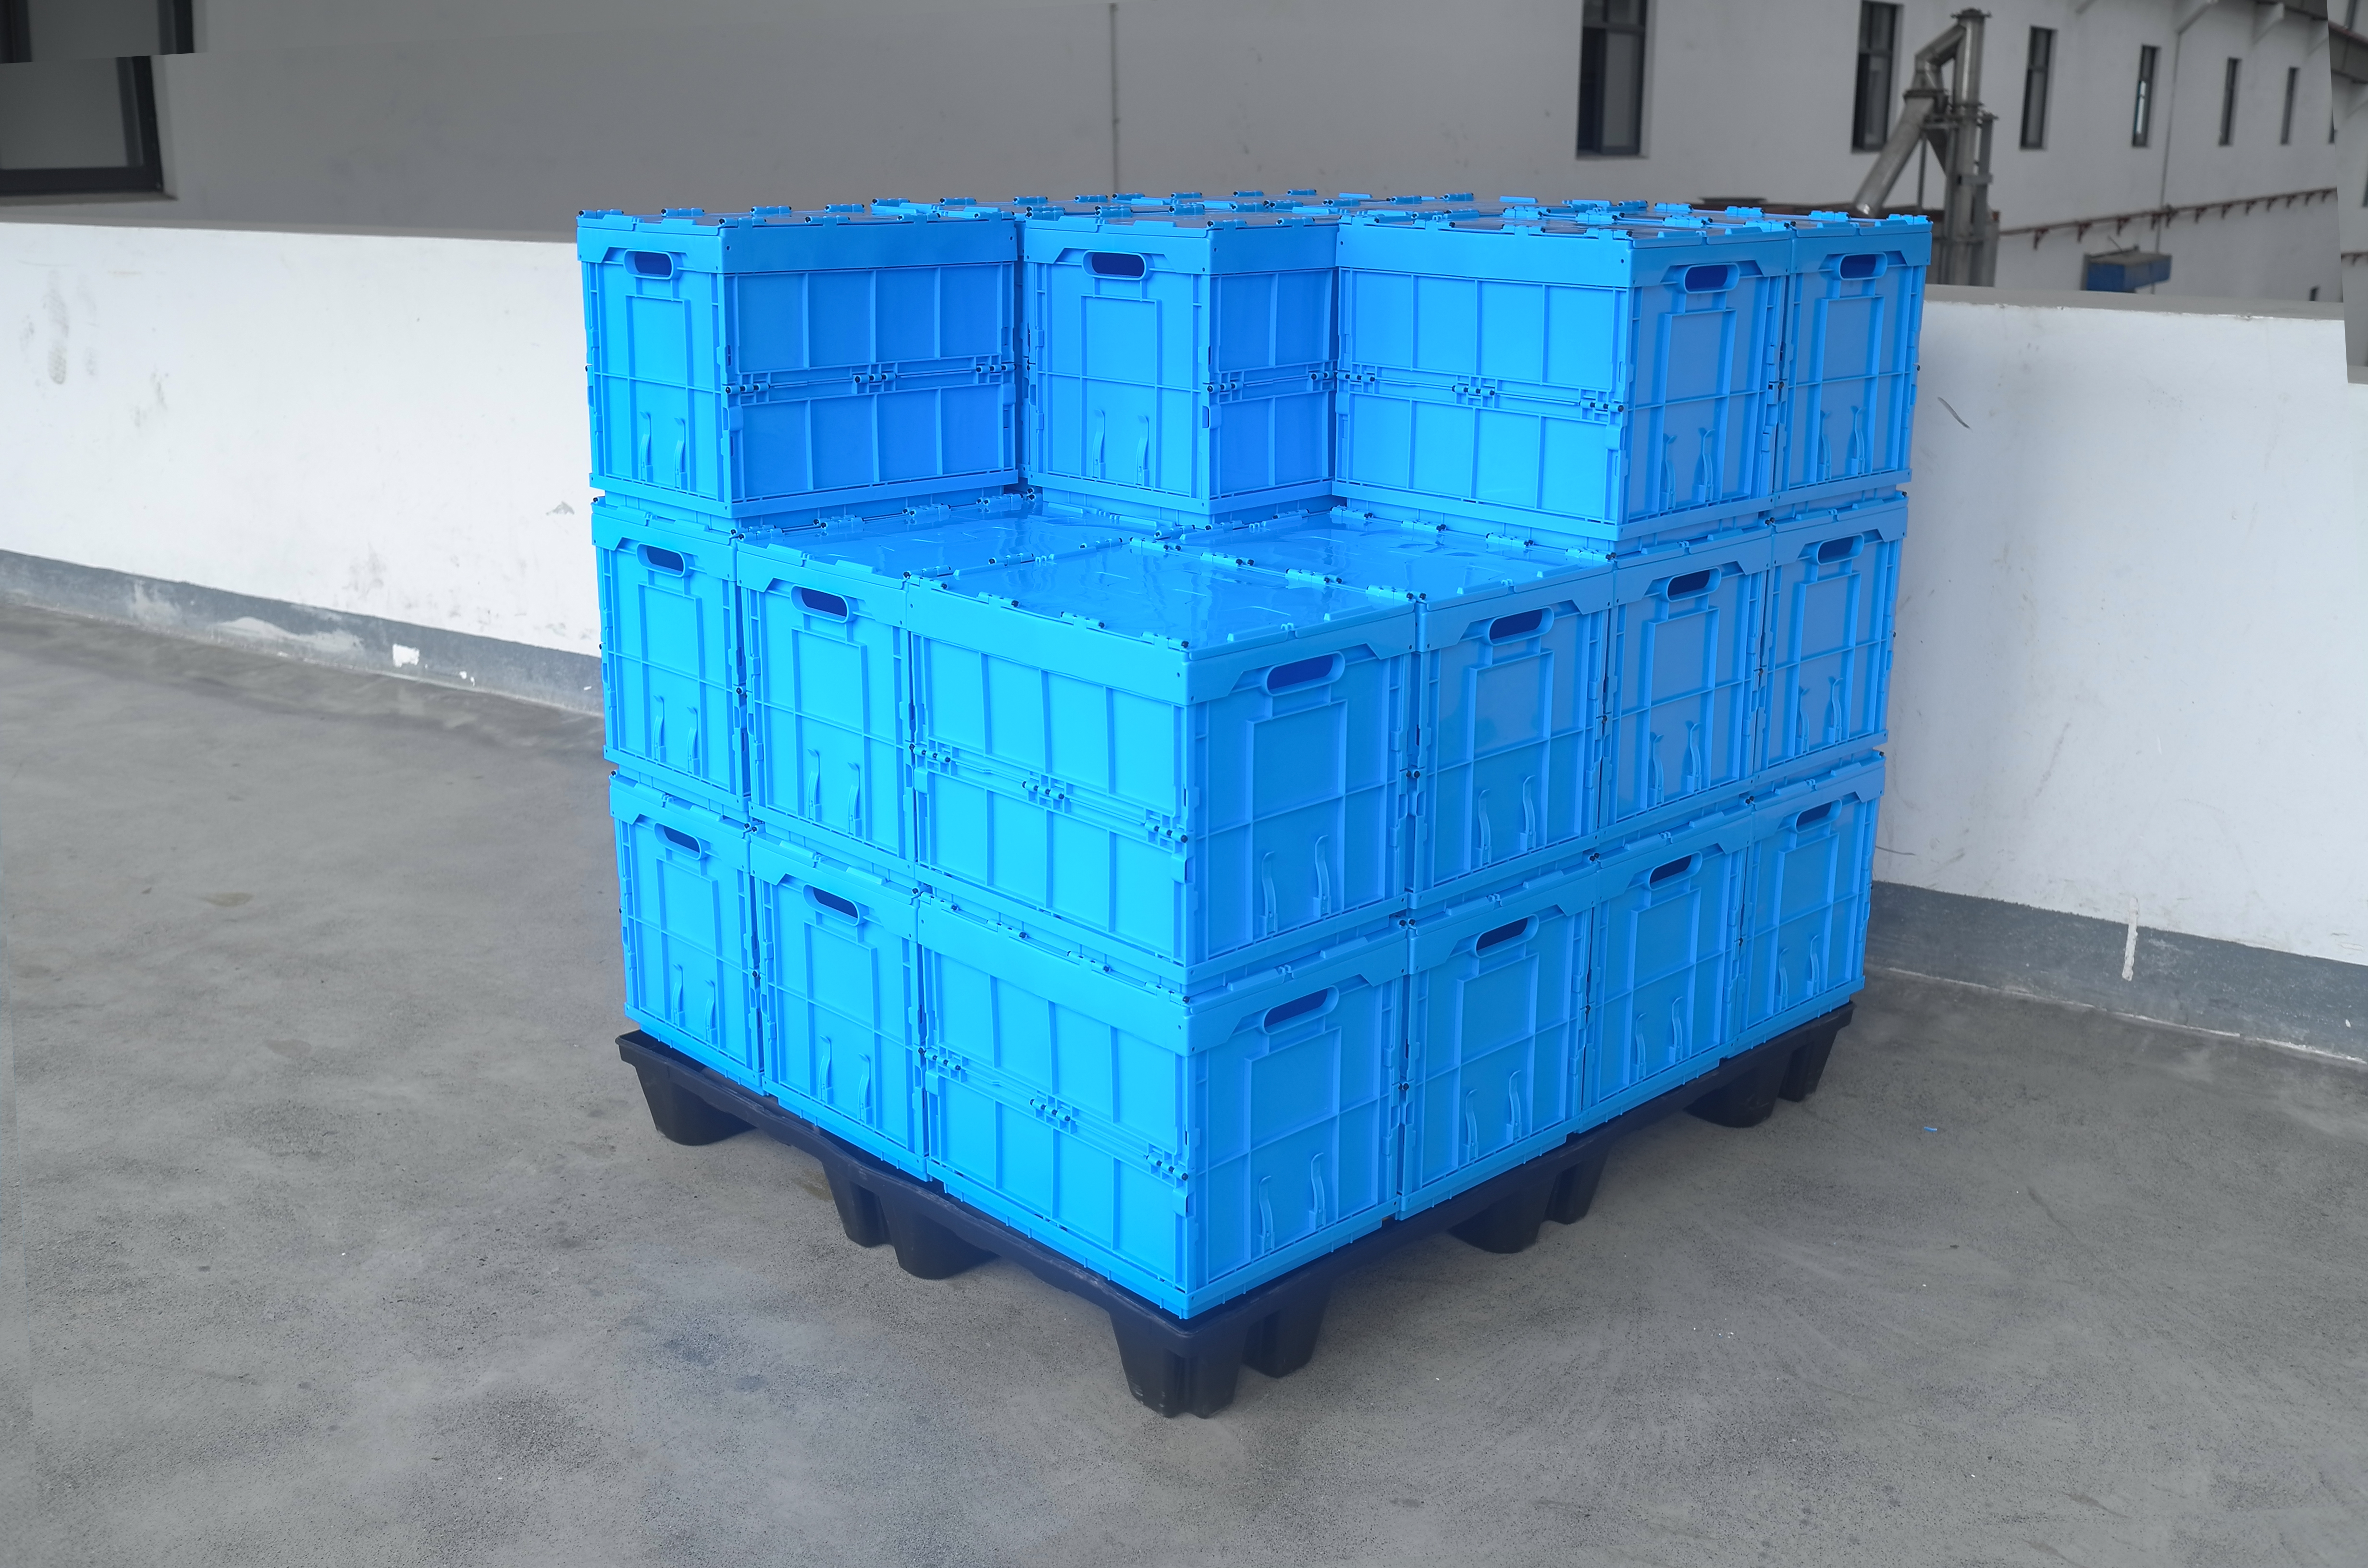 Ecobox 40x30x32.5cm caixa dobrável de plástico dobrável recipiente de armazenamento caixa de transporte